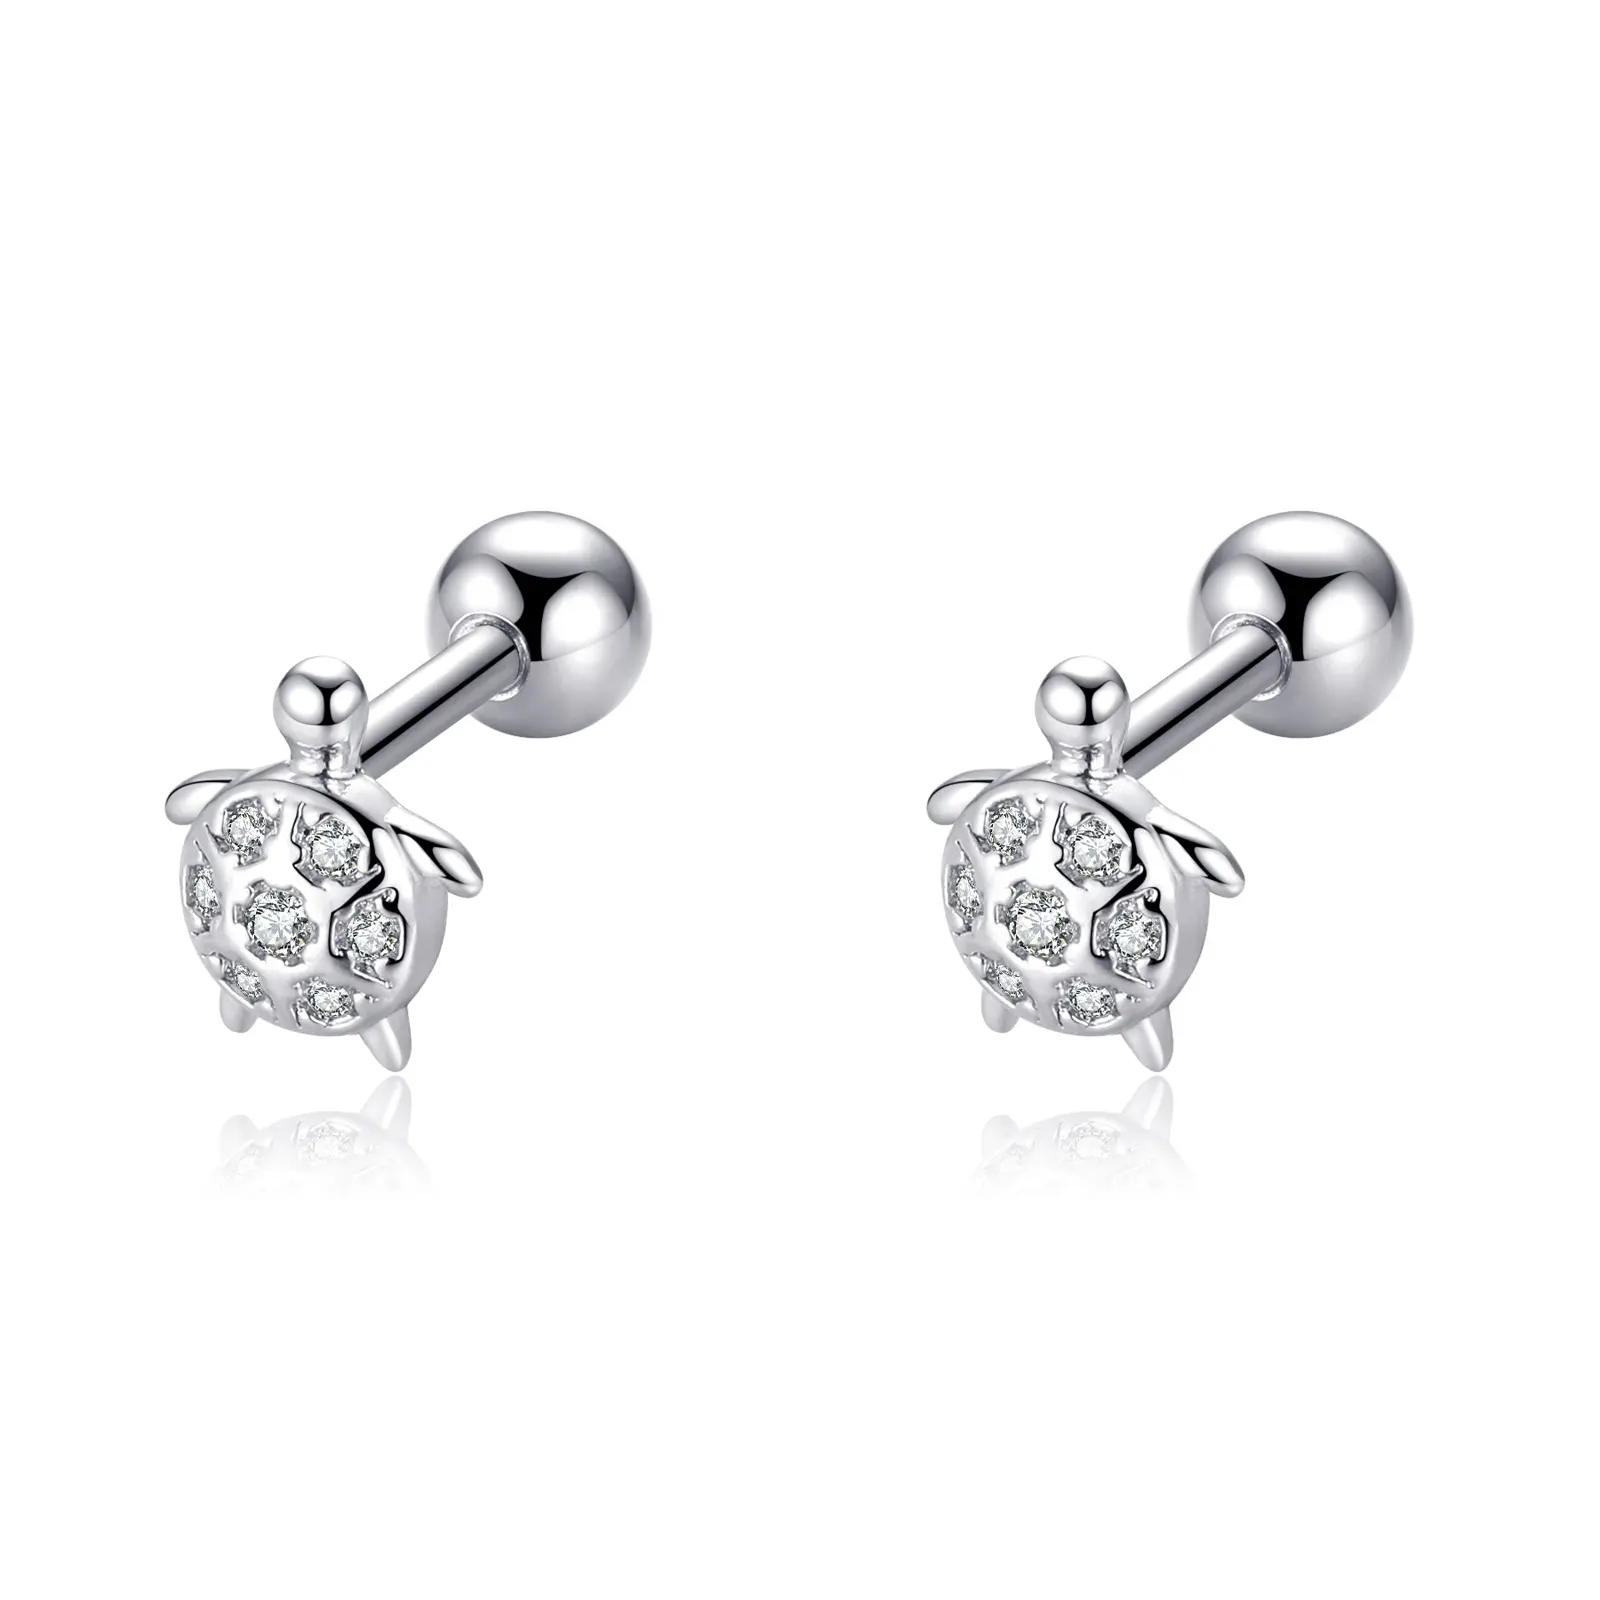 Dainty NEW 16G 316L Stainless Steel Earring Studs For Piercing Cubic Zirconia Stud Cartilage Helix Pierced Earrings Ear Jewelry